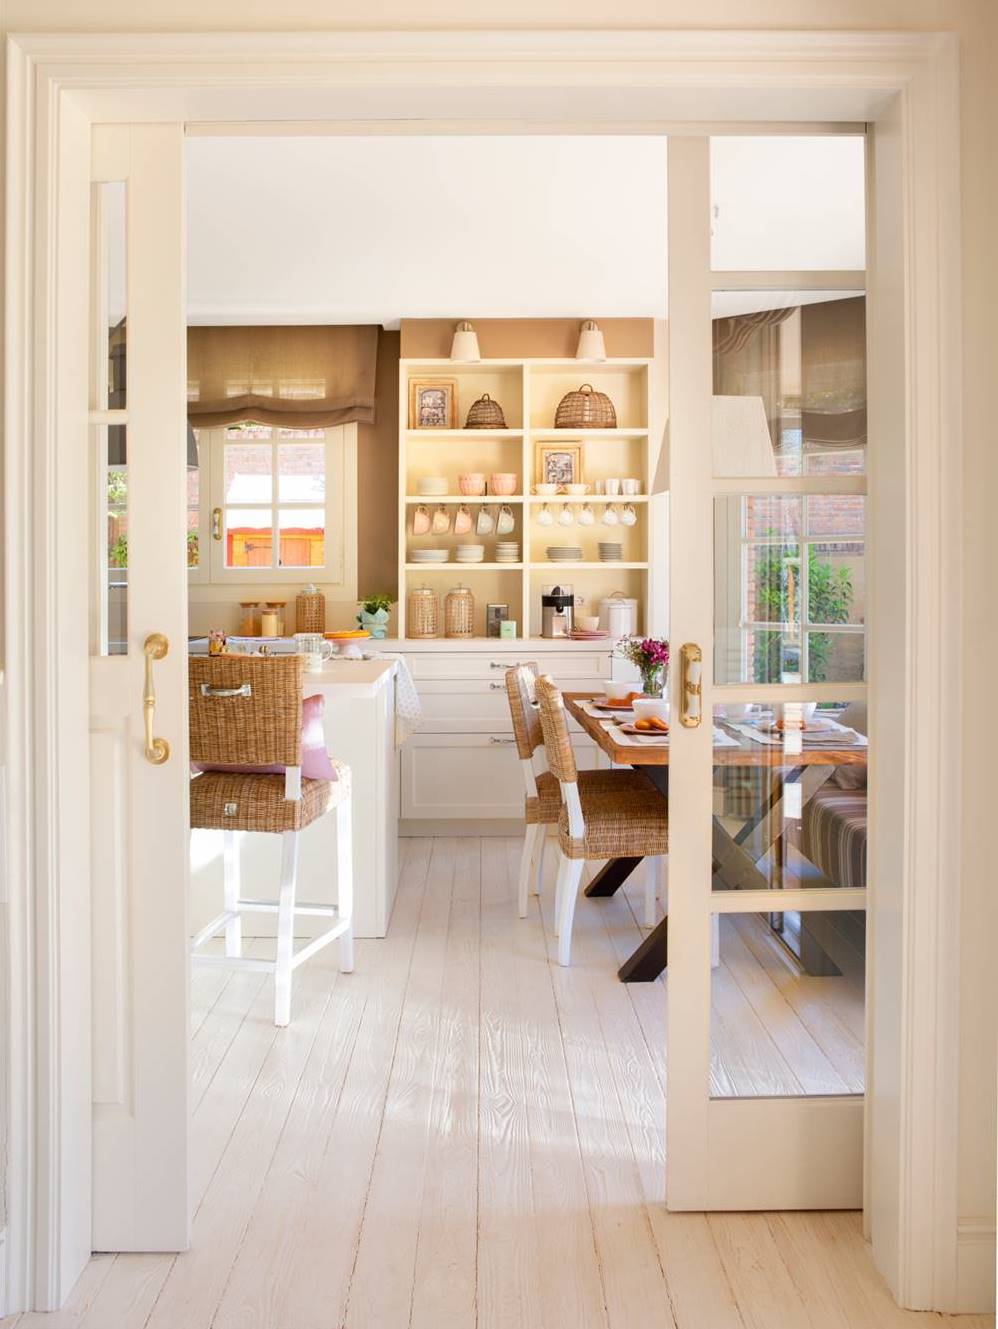 Cocina y office vistos desde puertas correderas acristaladas. Suelo de madera pintado de blanco (00427762)